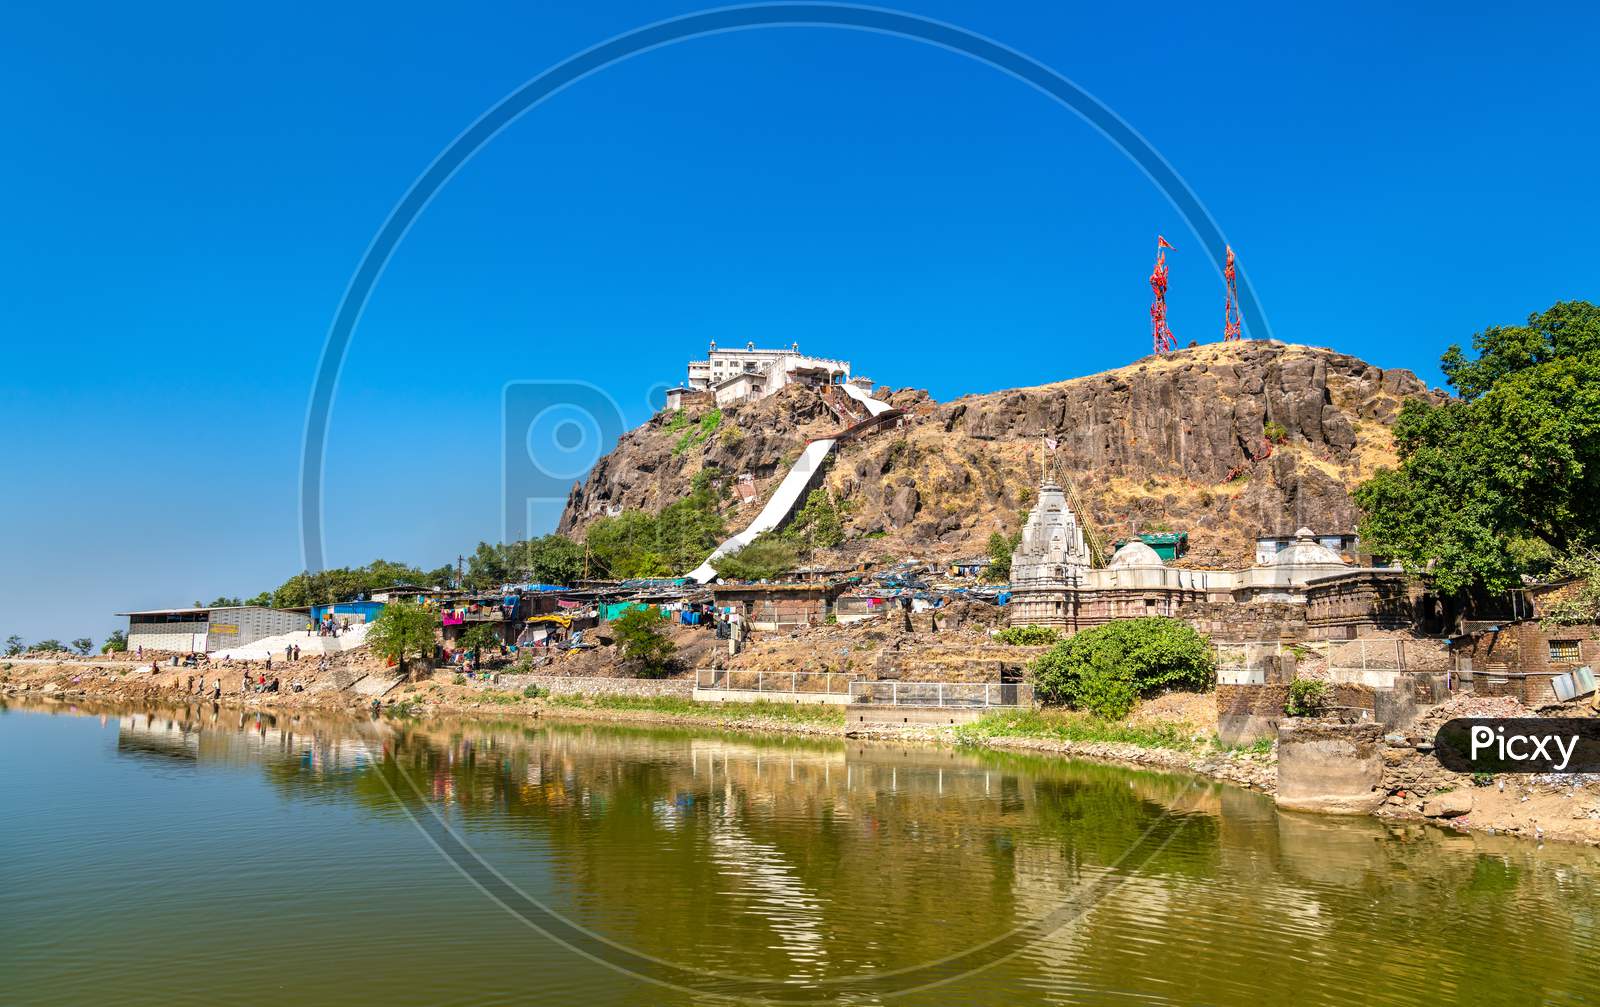 Dudhiyu Talav Lake and Kalika Mata Temple at the summit of Pavagadh Hill - Gujarat state of India